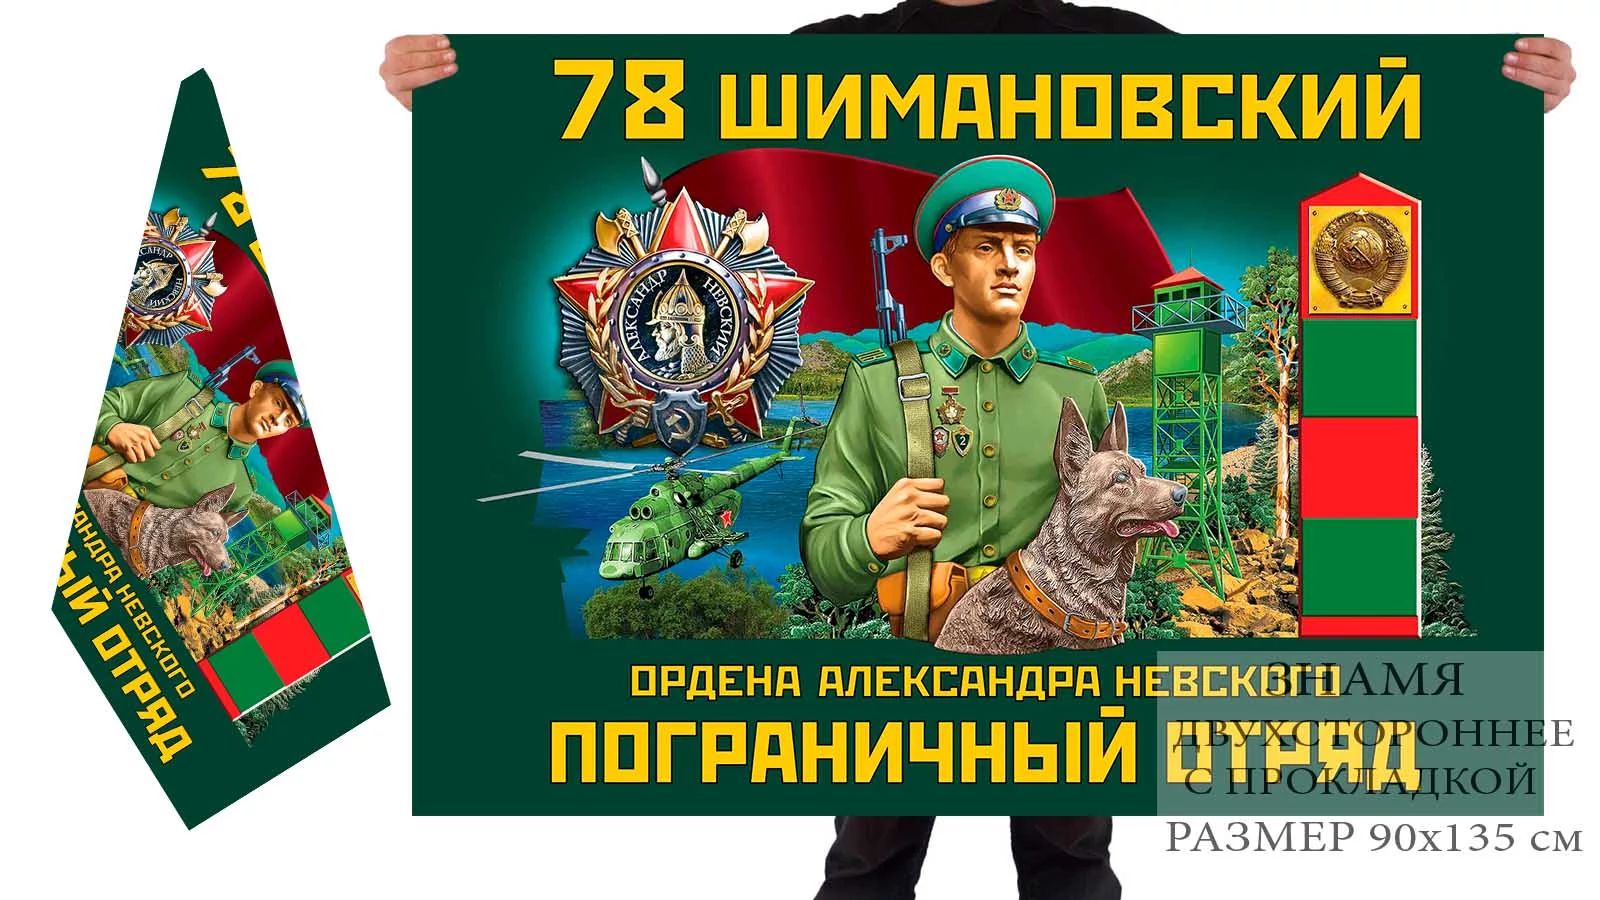 Двусторонний флаг 78 Шимановского ордена Александра Невского погранотряда